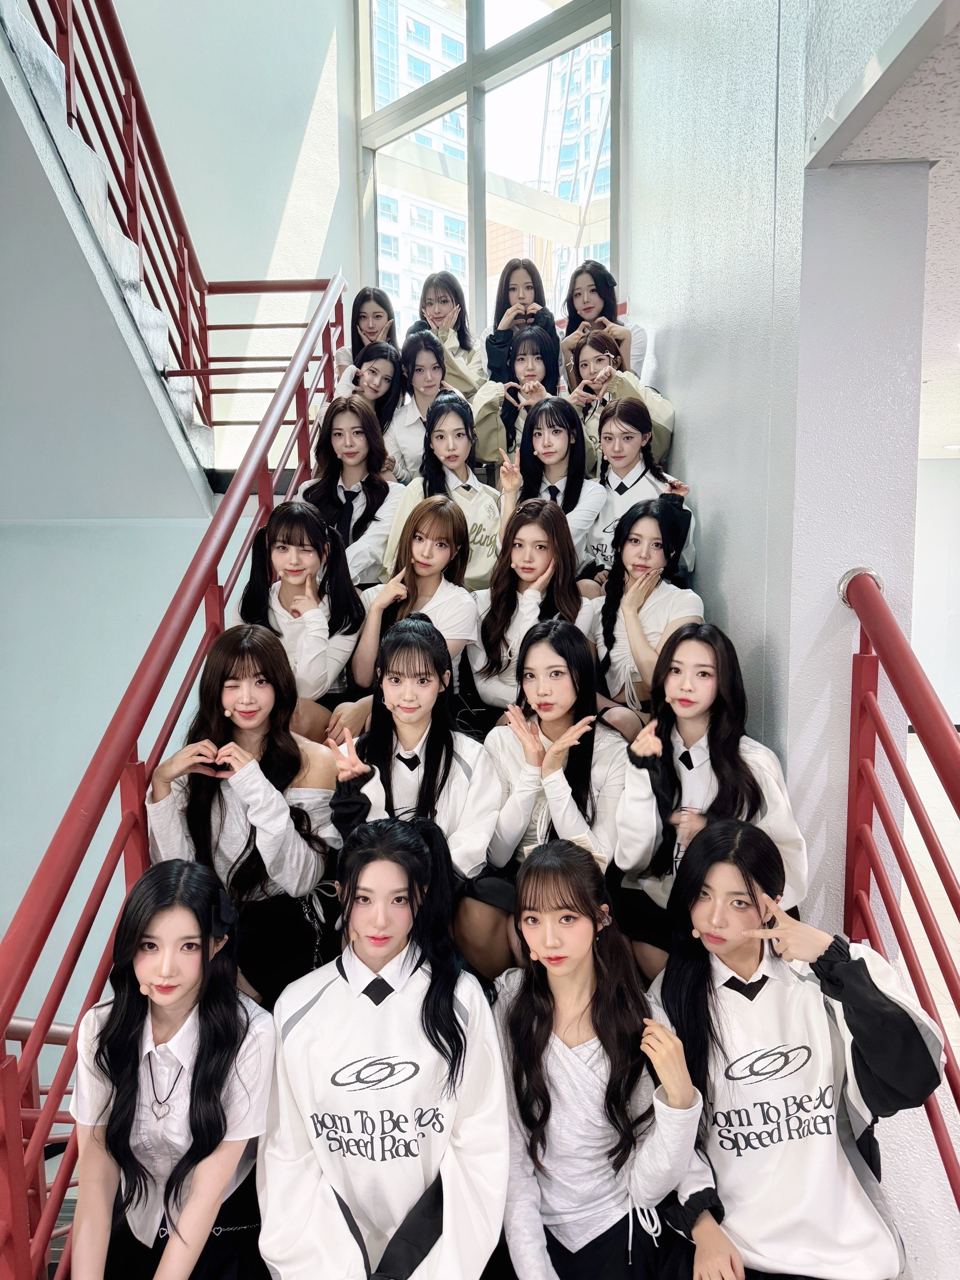 tripleS kpop girl group global girl group shion modhaus 24 member girl group